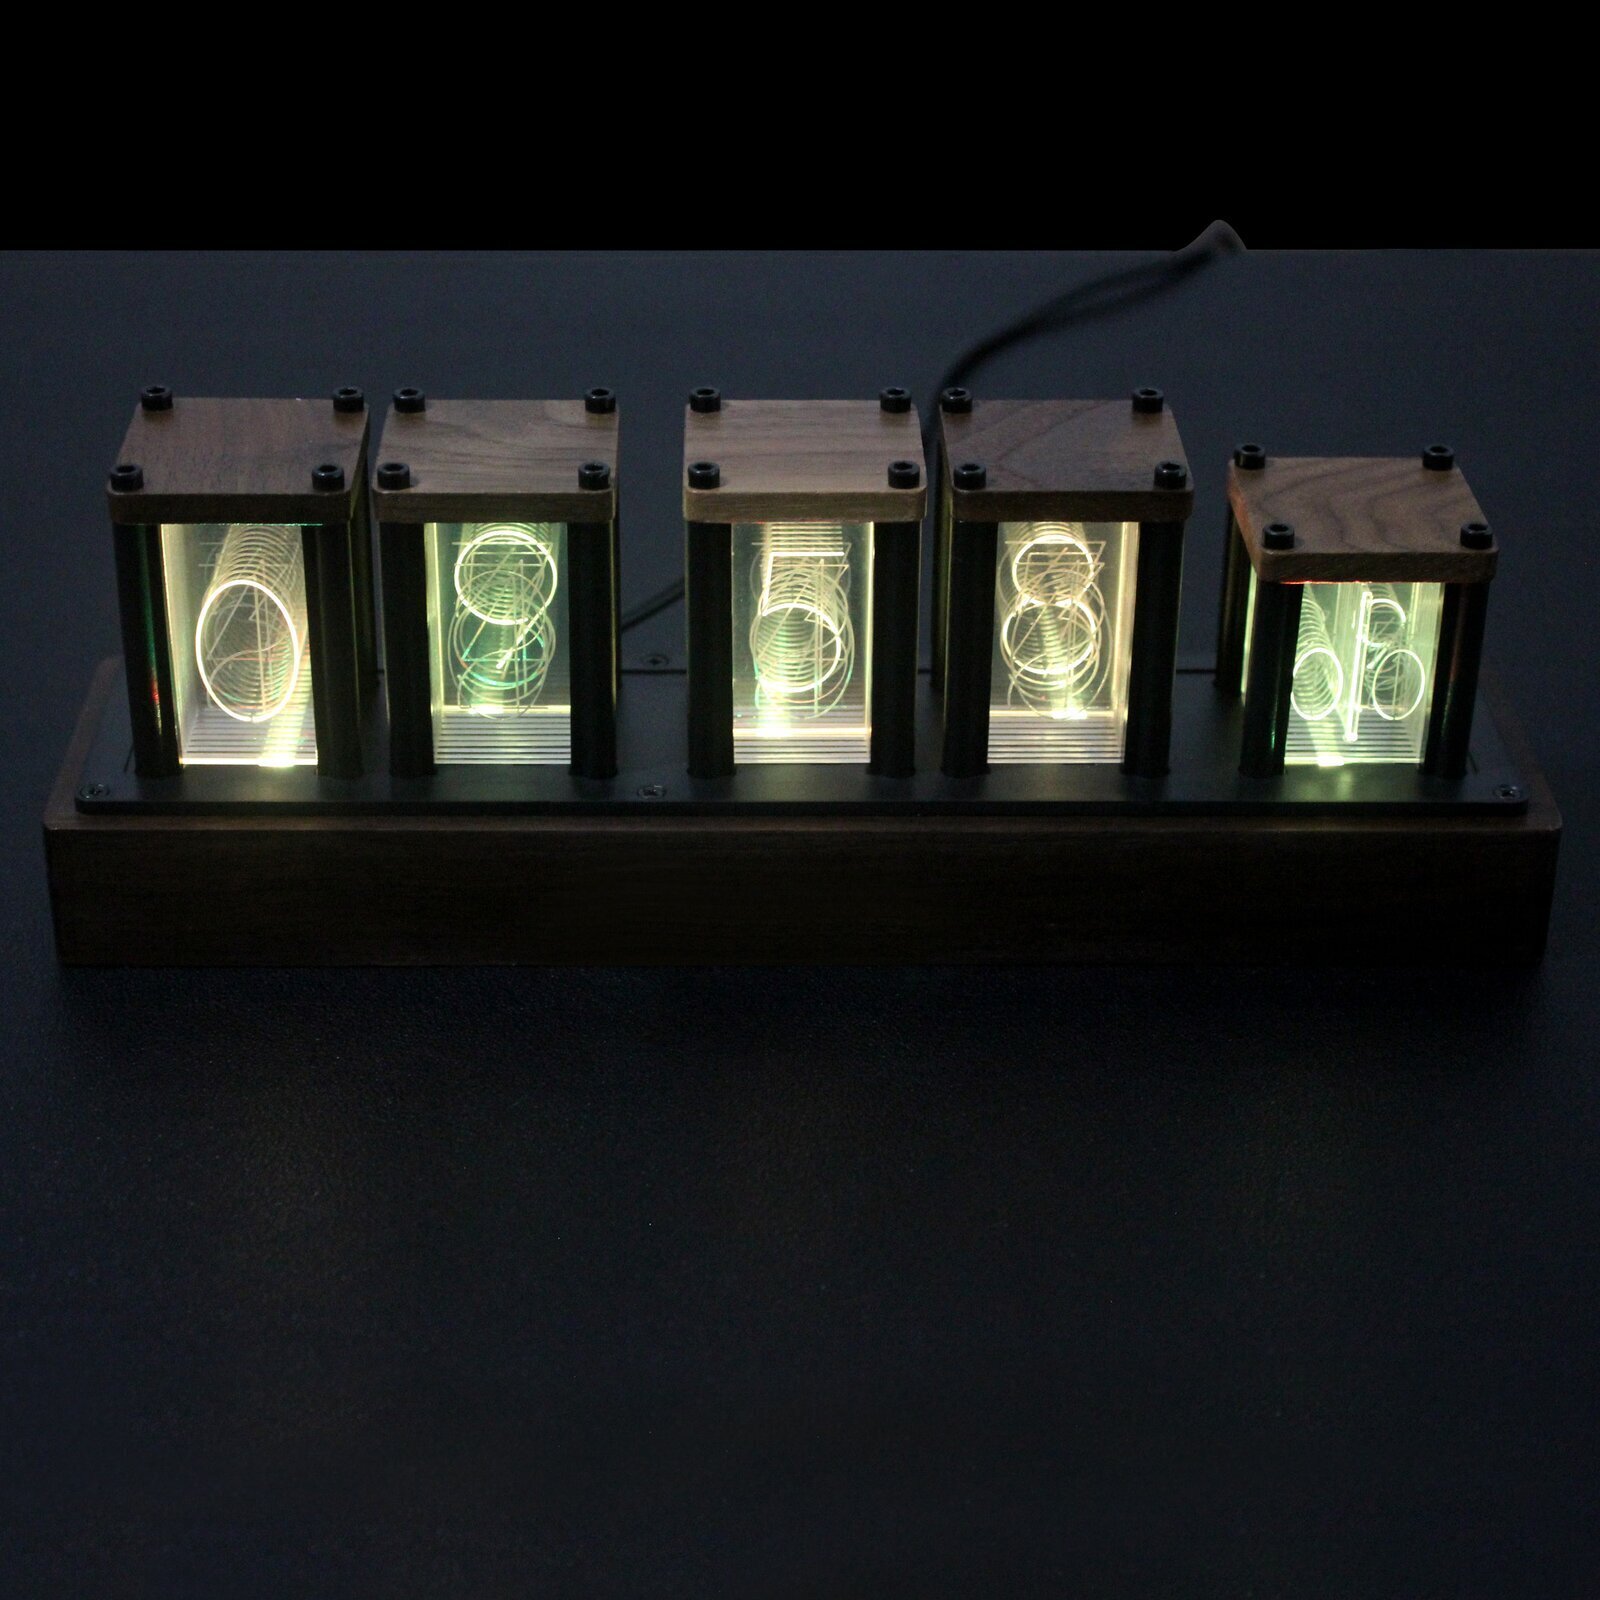 LED Cool Clocks for Desk